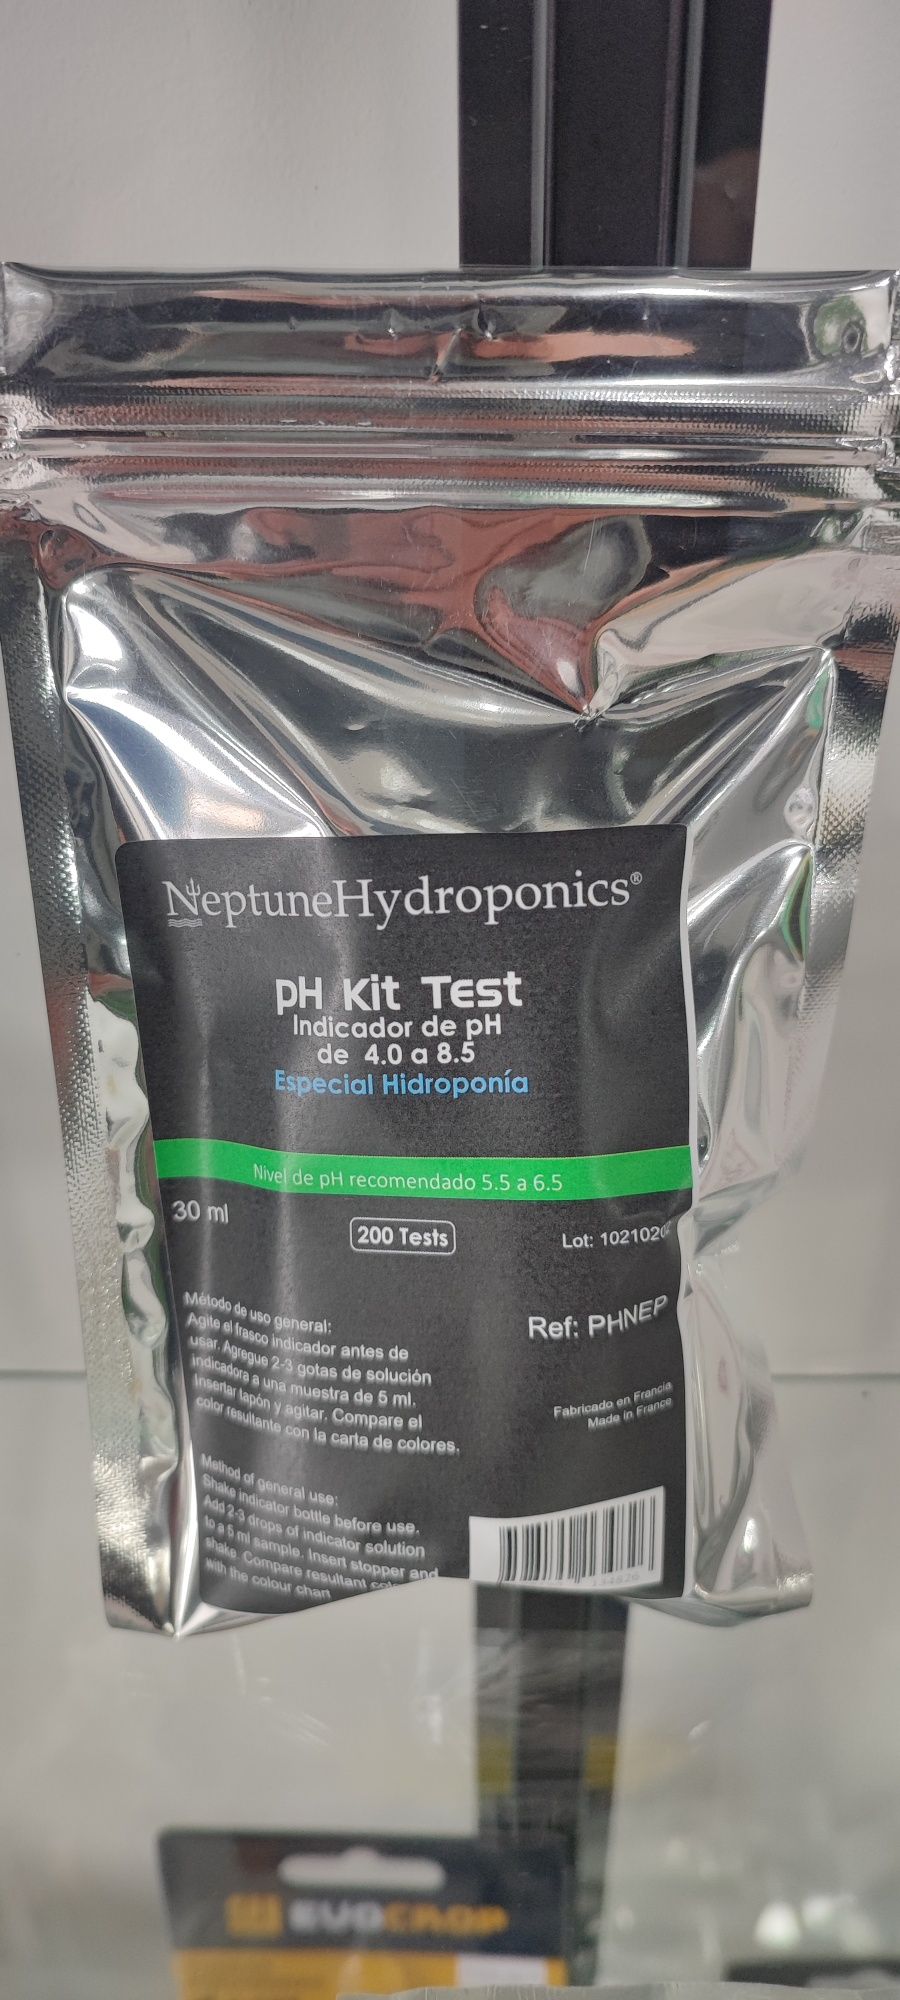 Caneta leitor PH Vanguard ou teste PH Líquido p/ hidroponia ou Aquário